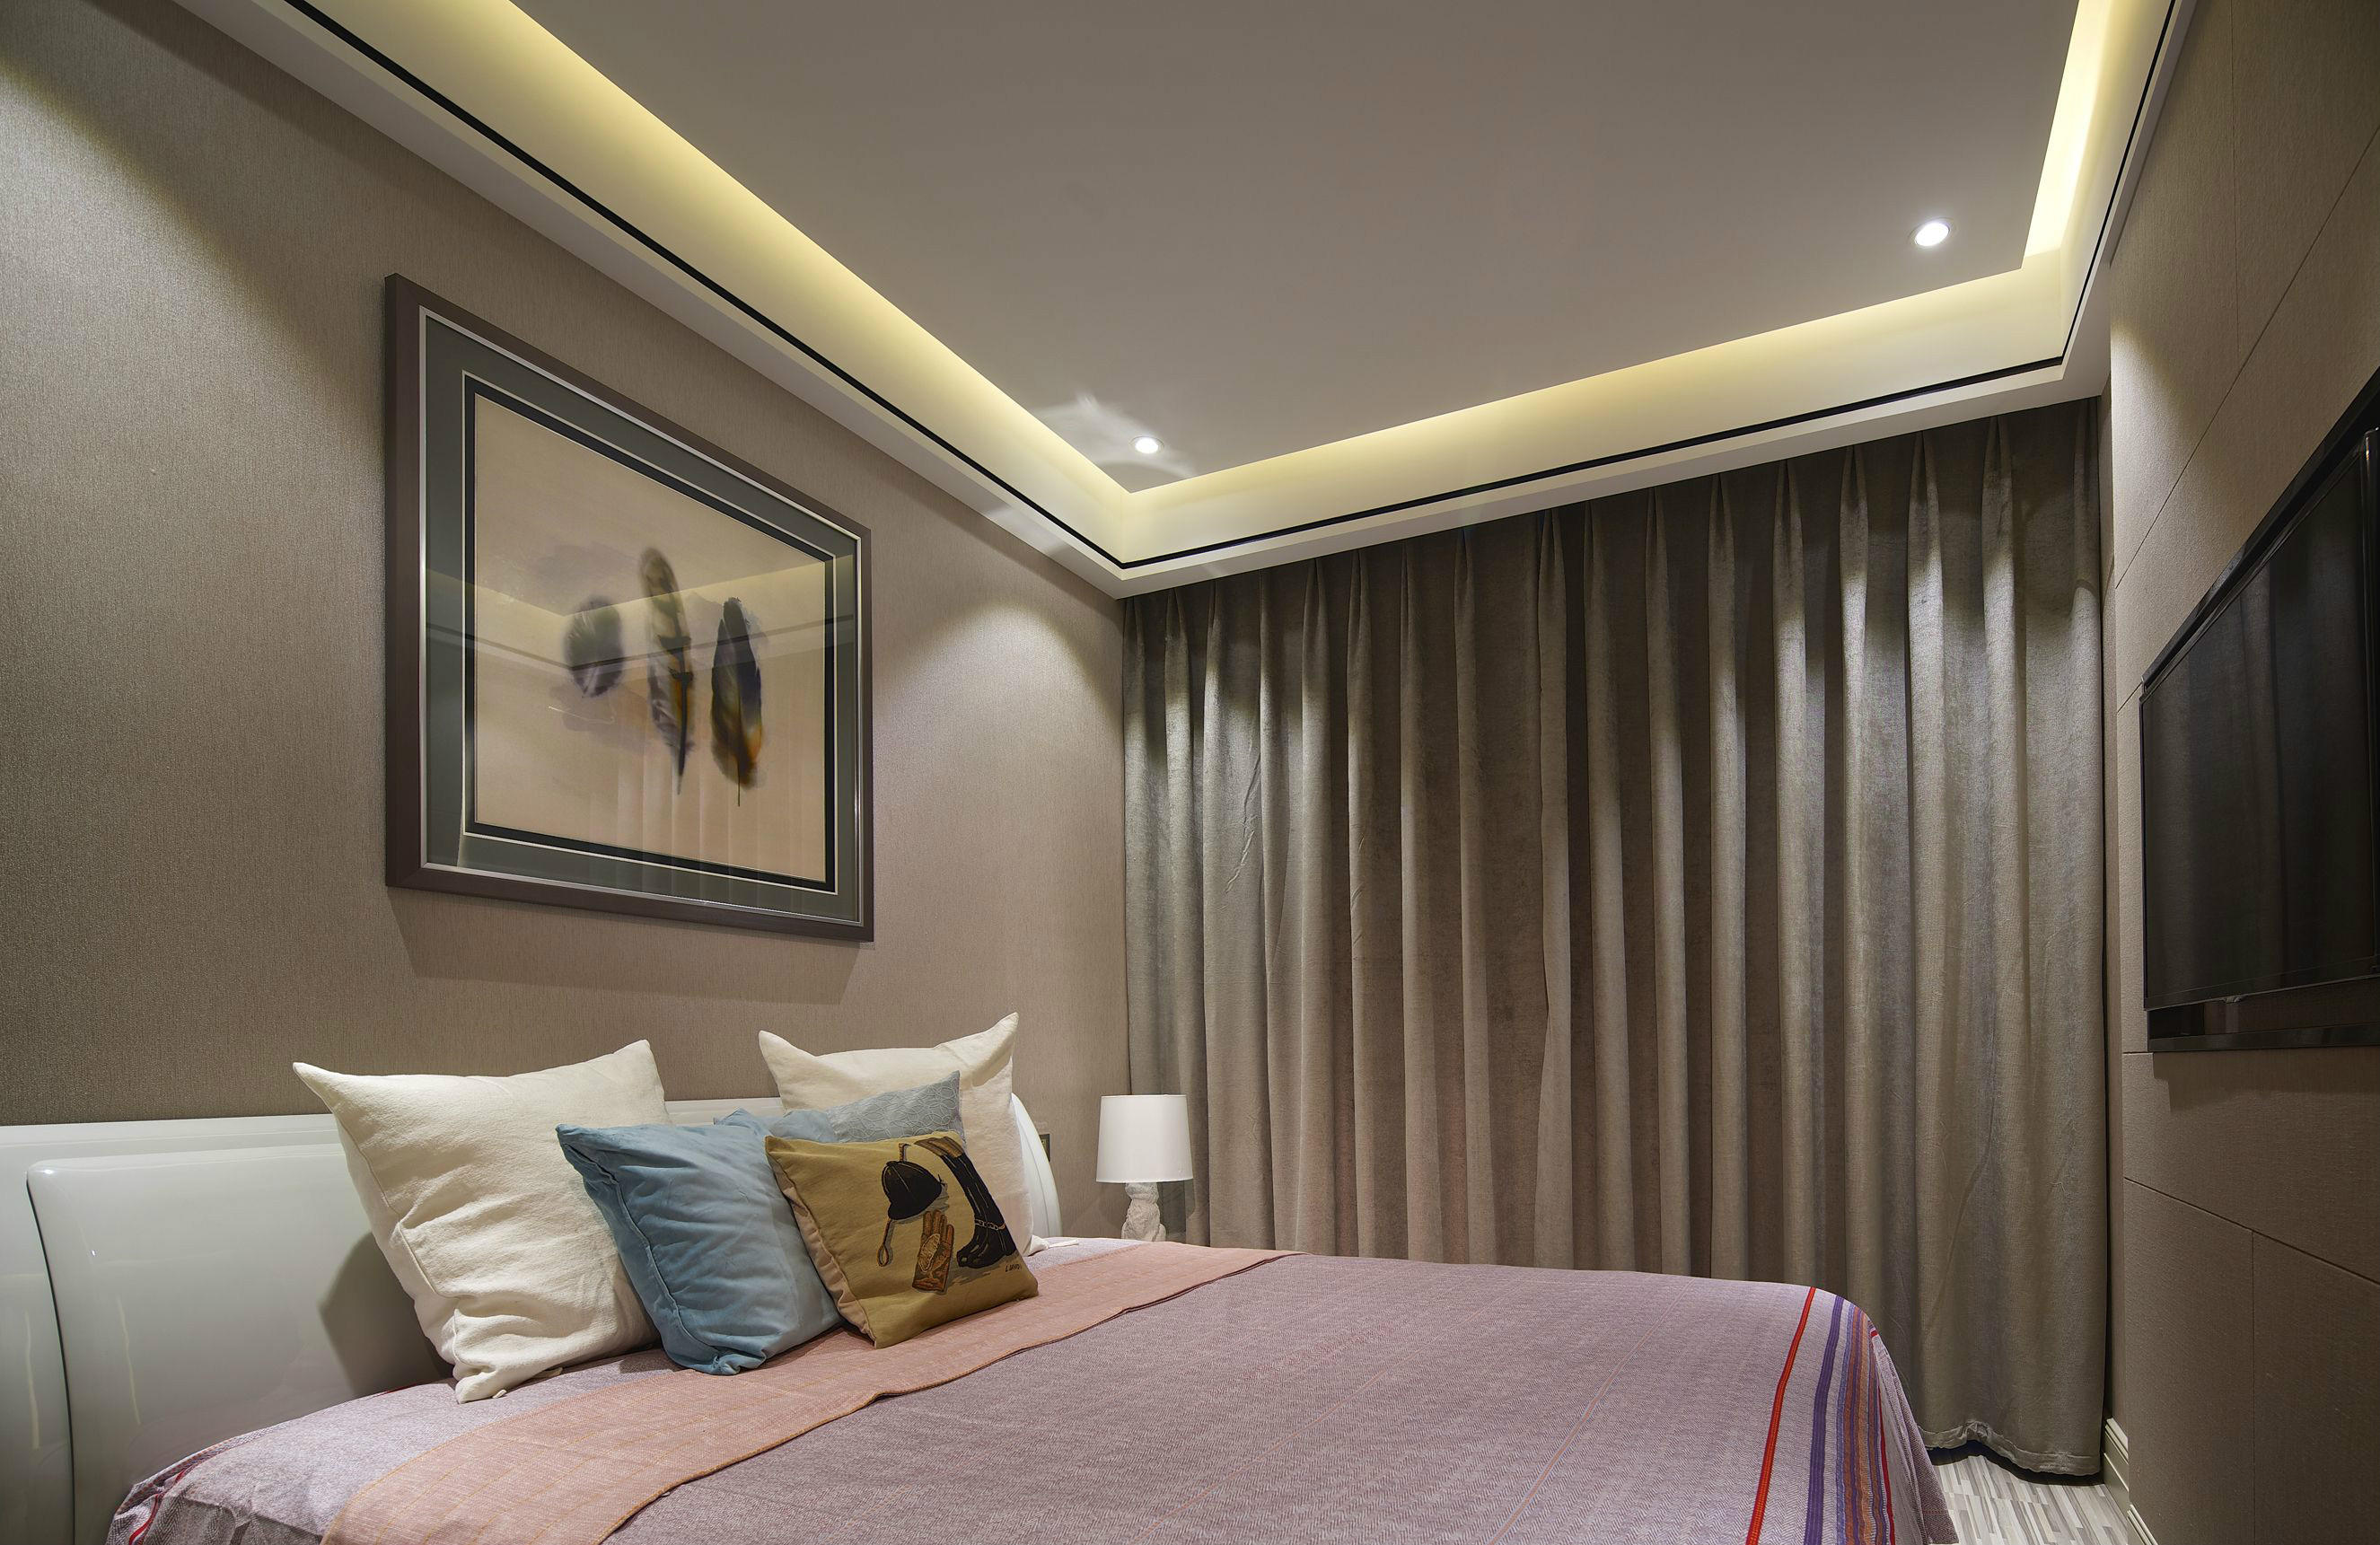 侧卧舒适为考虑的重点，卧室顶面没有设顶灯，并用温馨柔软粉色床品来装点空间。